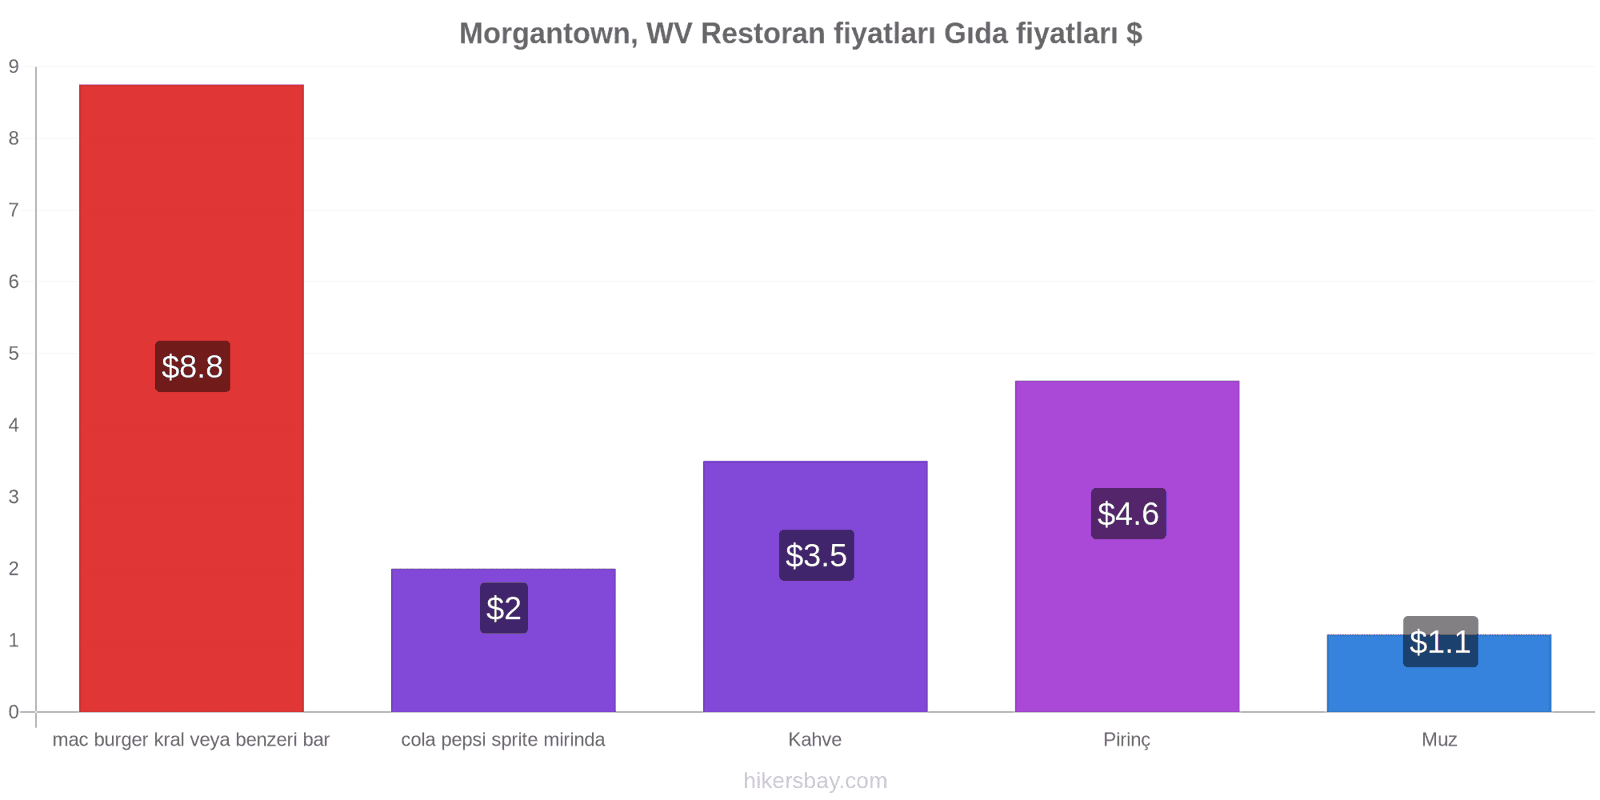 Morgantown, WV fiyat değişiklikleri hikersbay.com